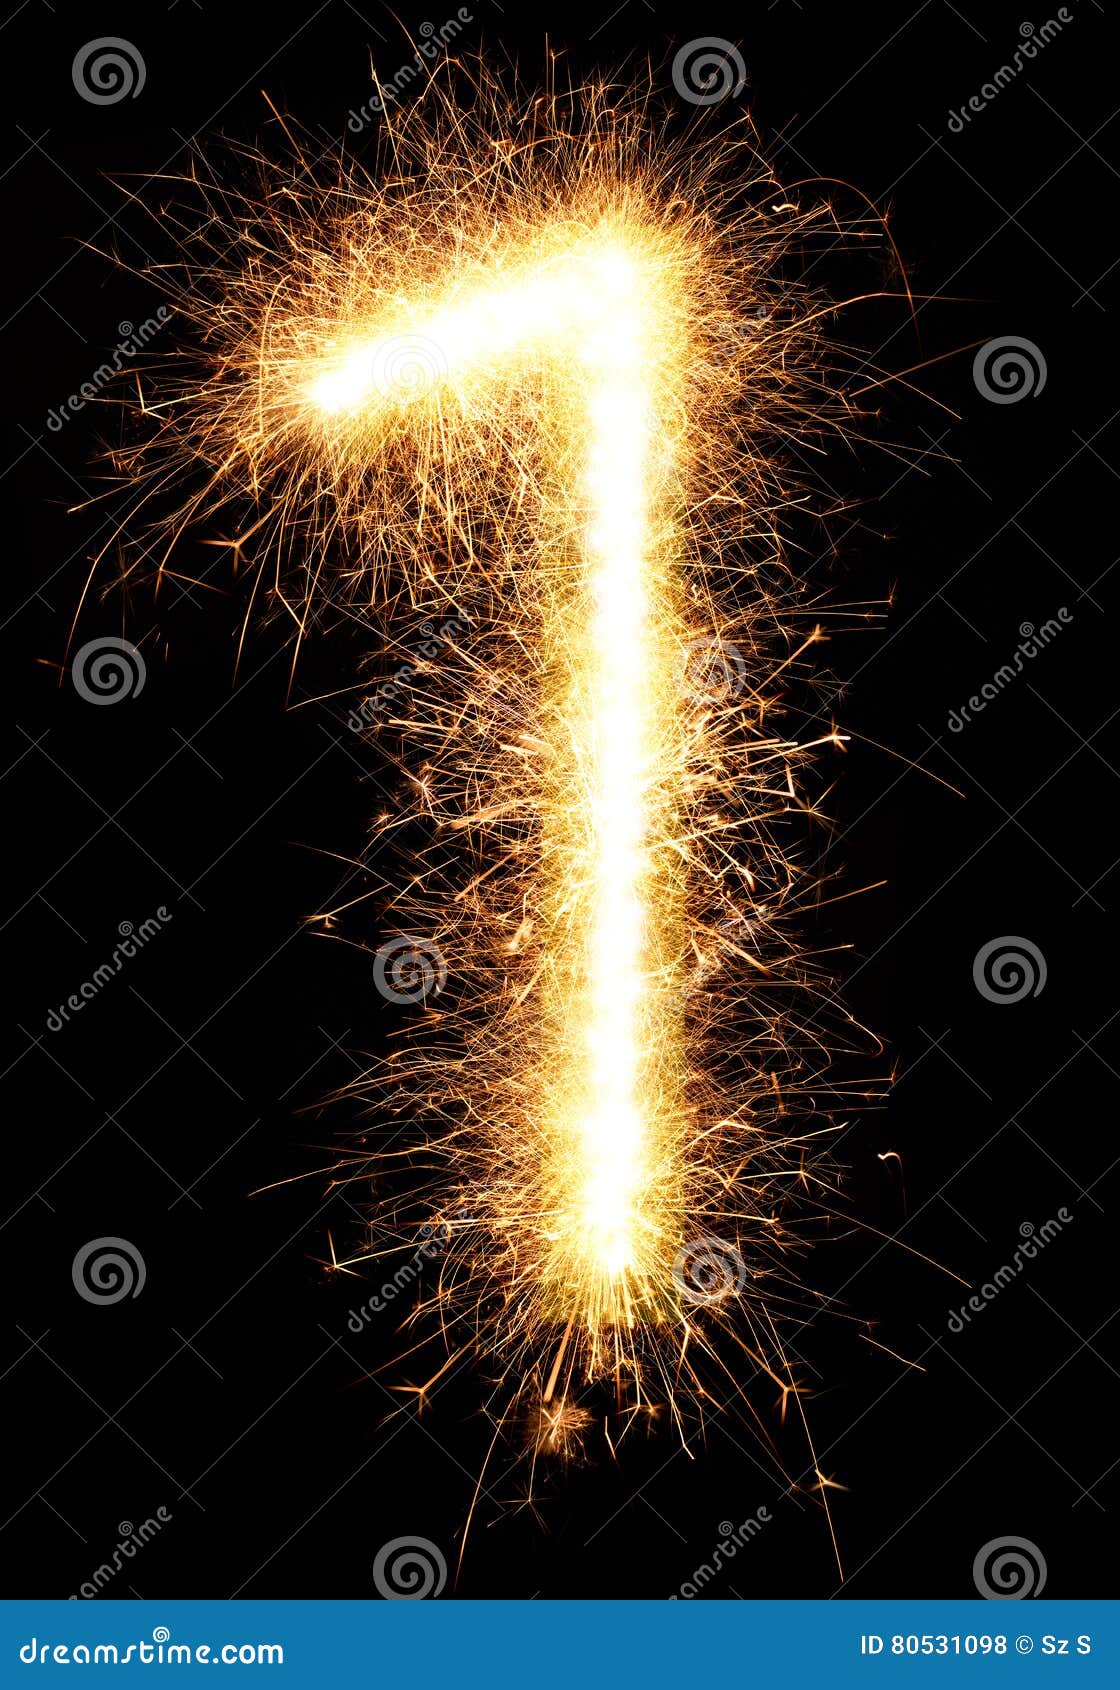 sparkler firework light number 1  on black